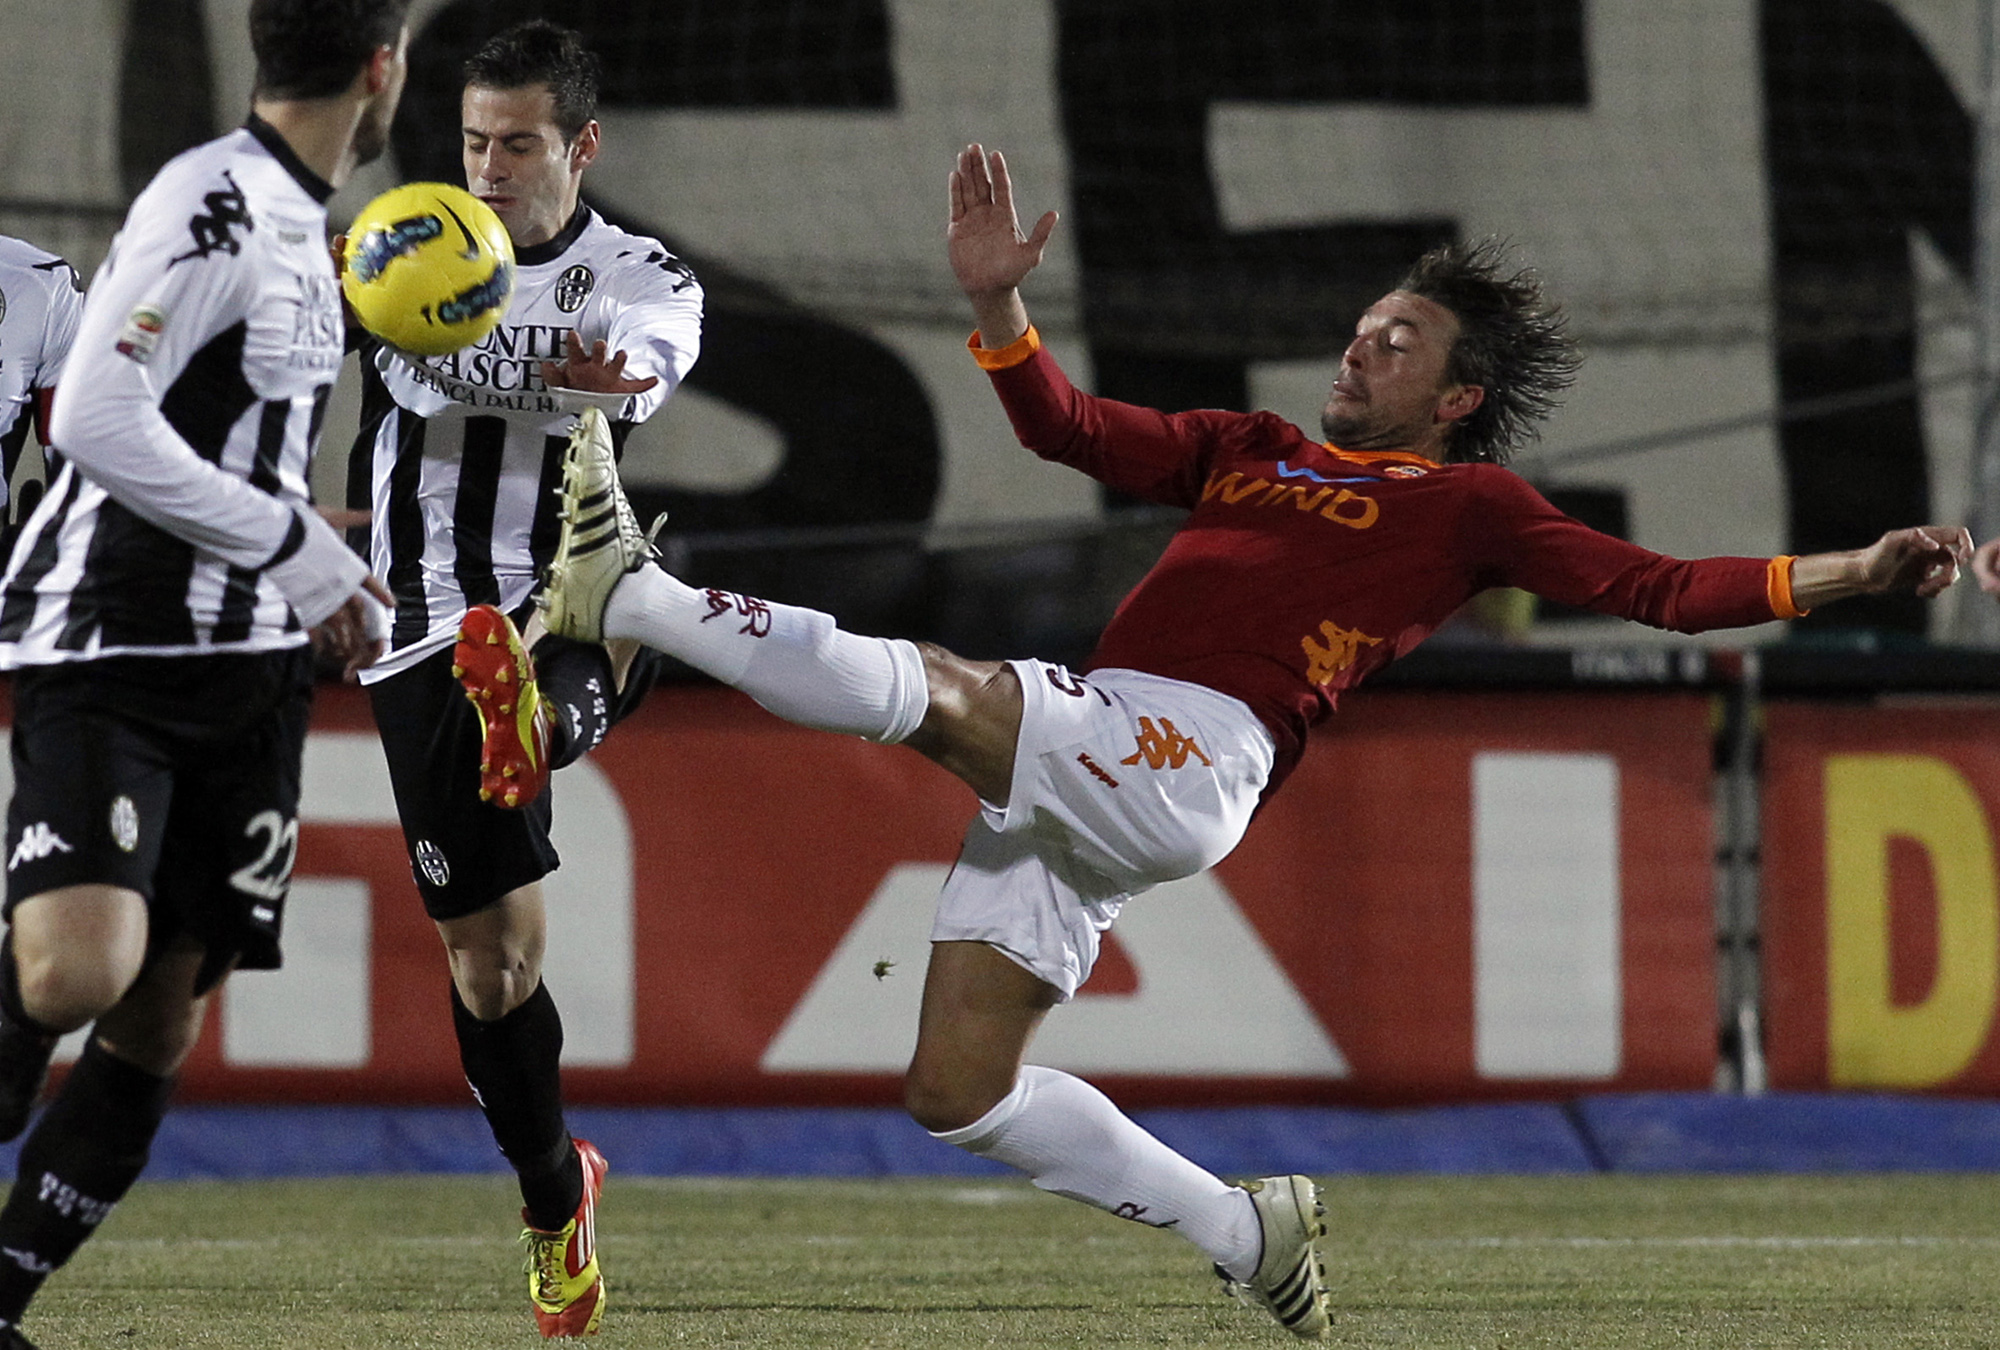 Sienas Emanuele Calaiò fixade matchens enda mål - där Gabriel Heinzes kamp med att fälla Sienaspelare var mindre lyckad.